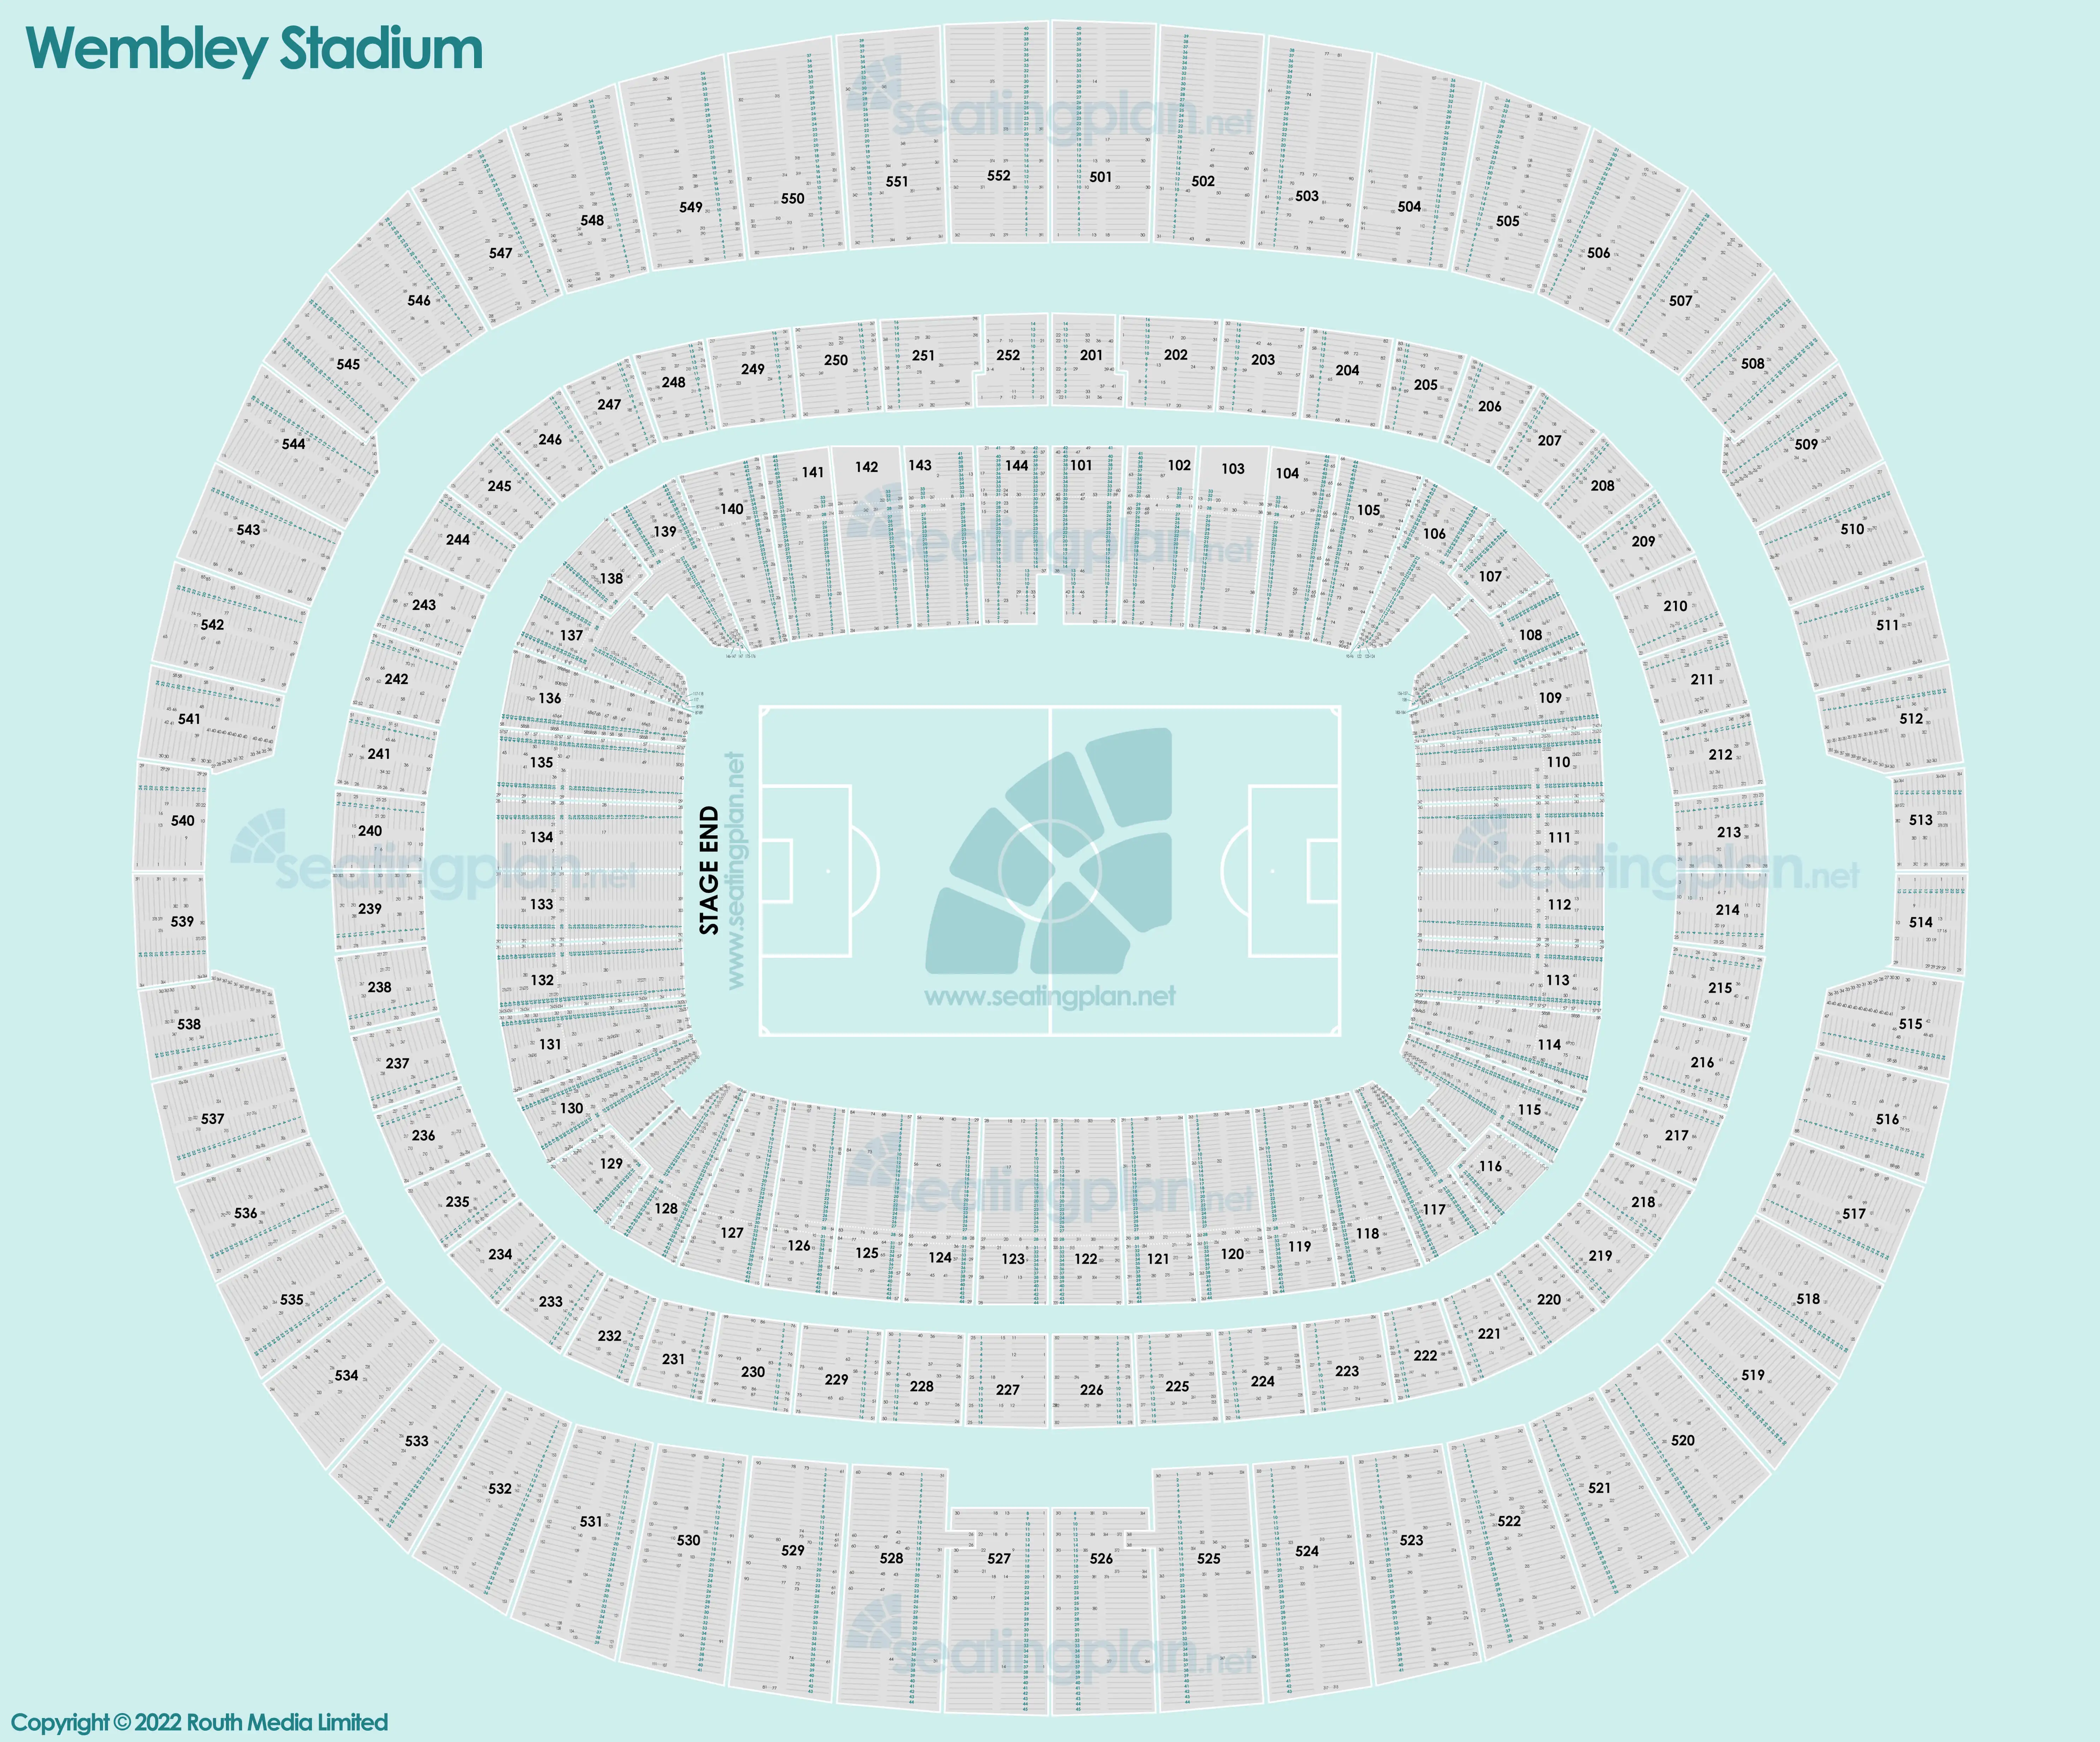 detailed Seating Plan at Wembley Stadium